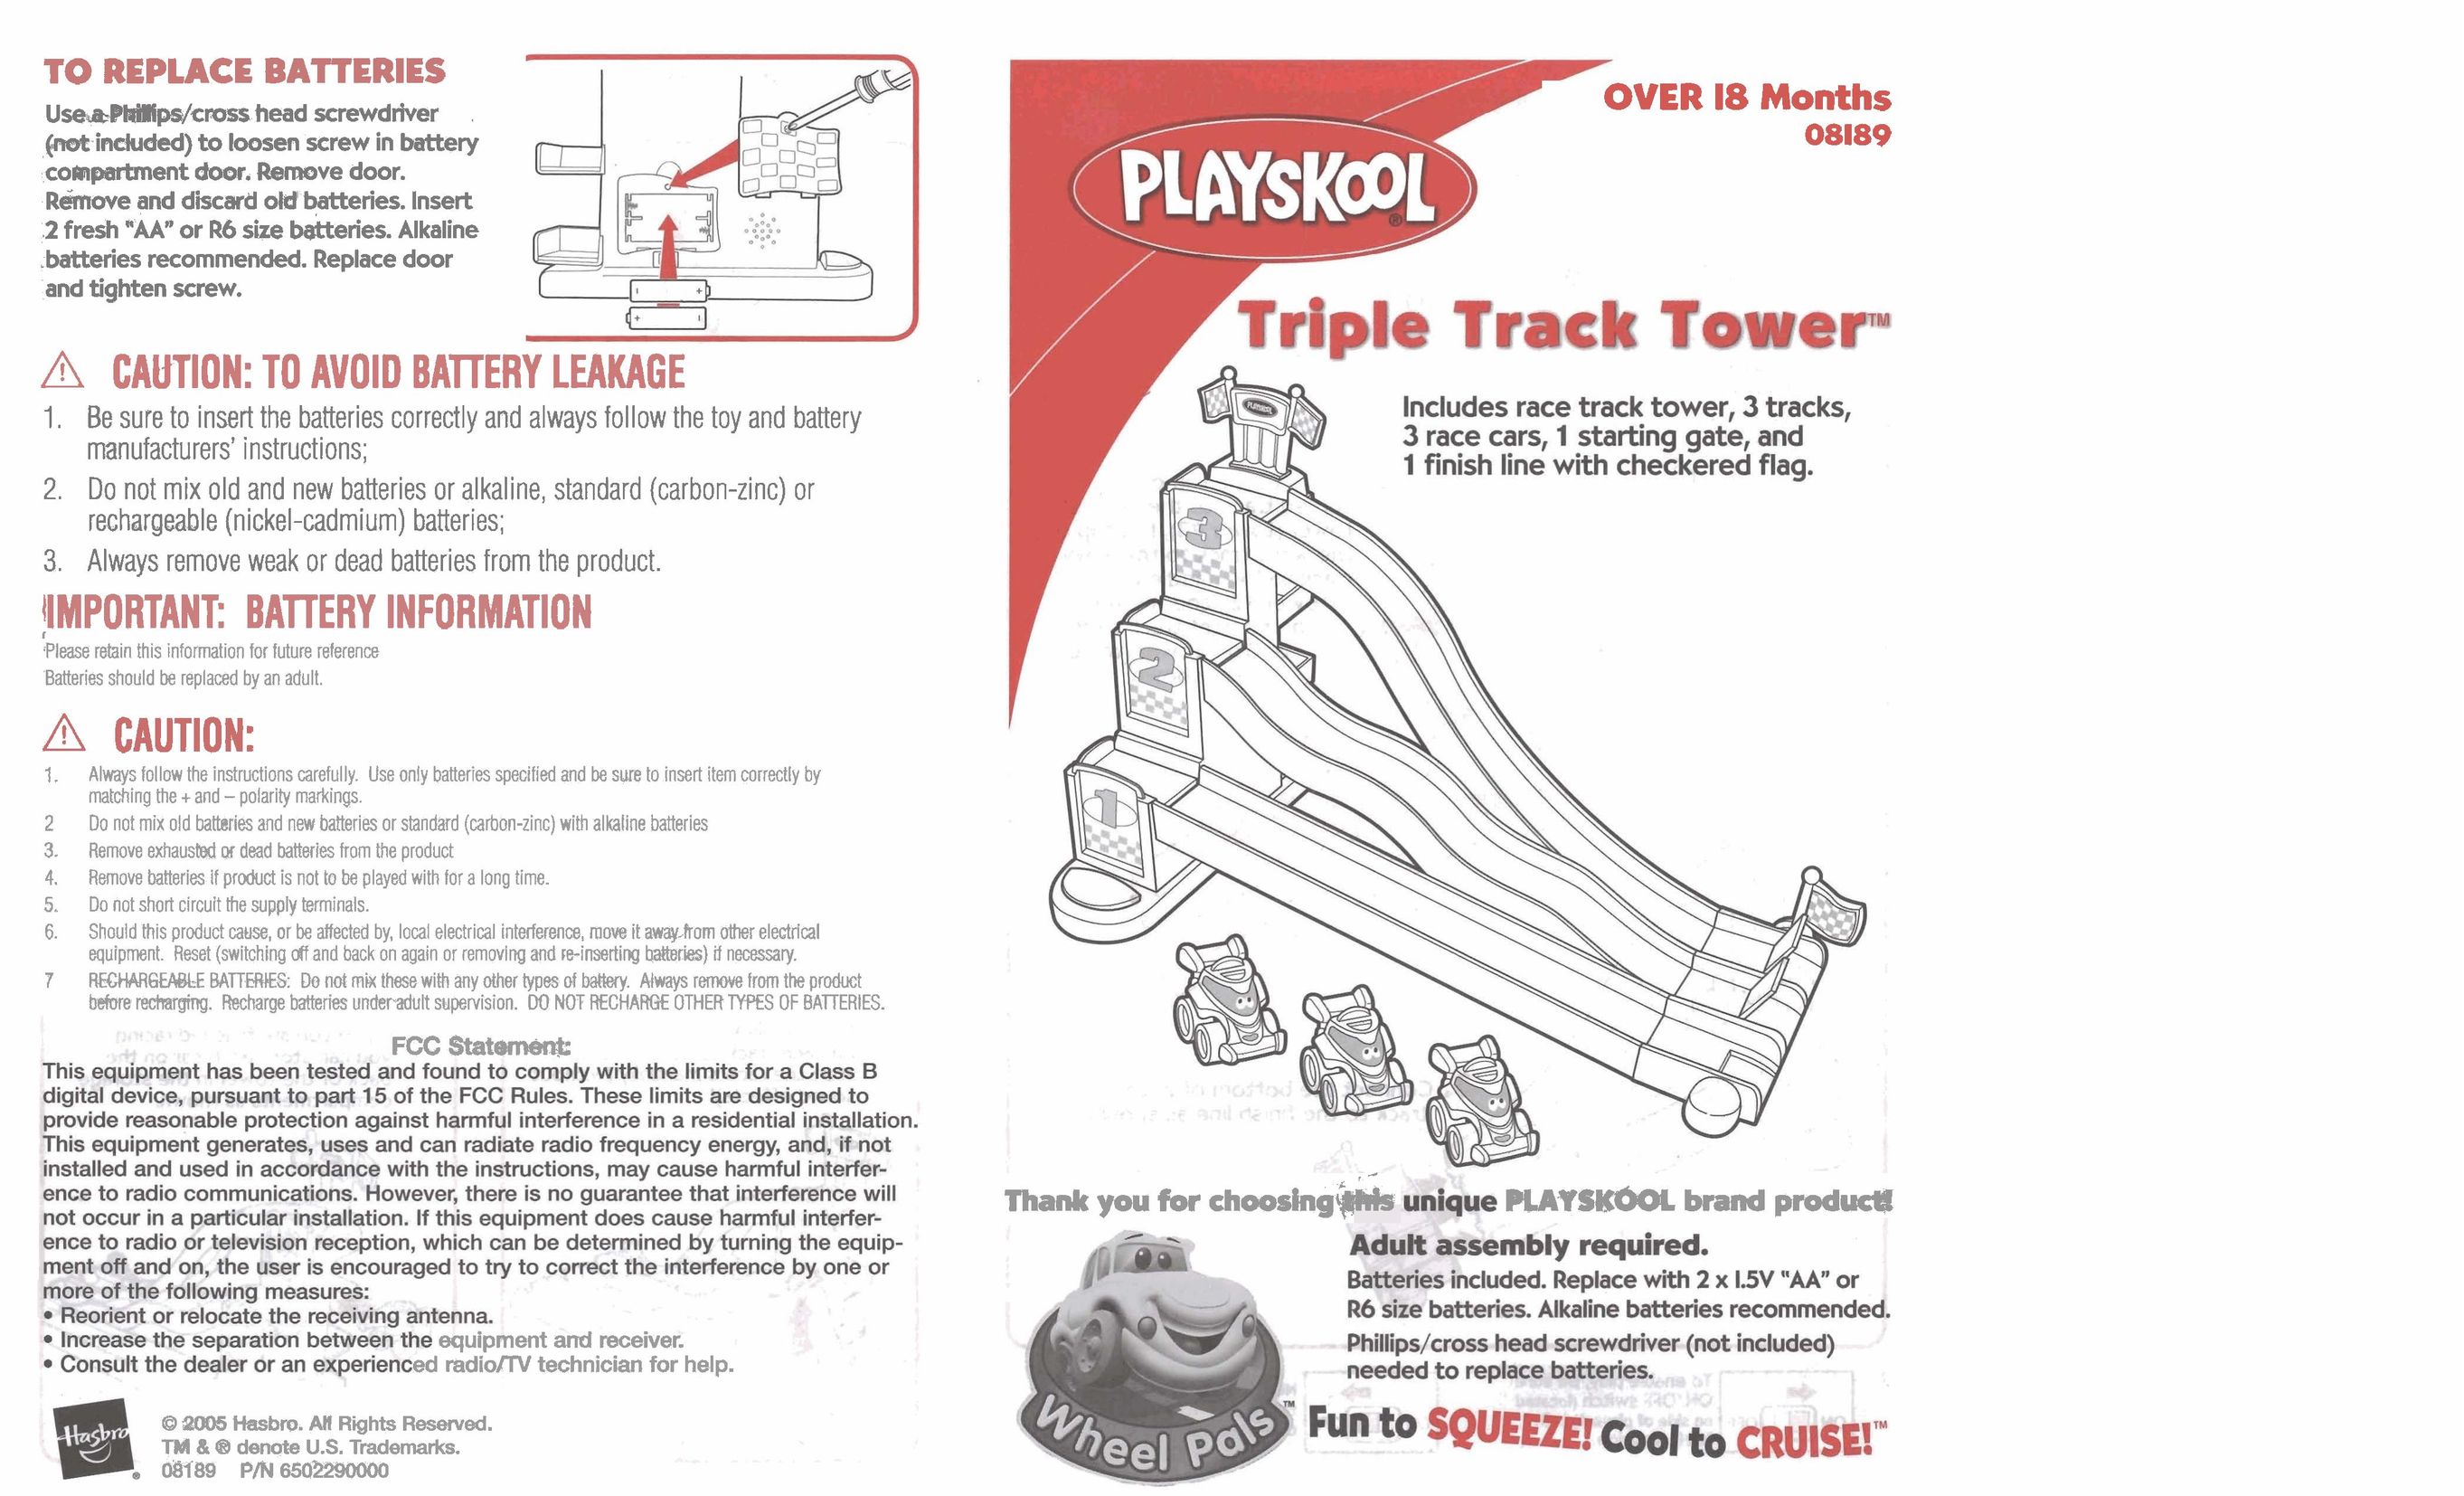 Hasbro 08189 Games User Manual